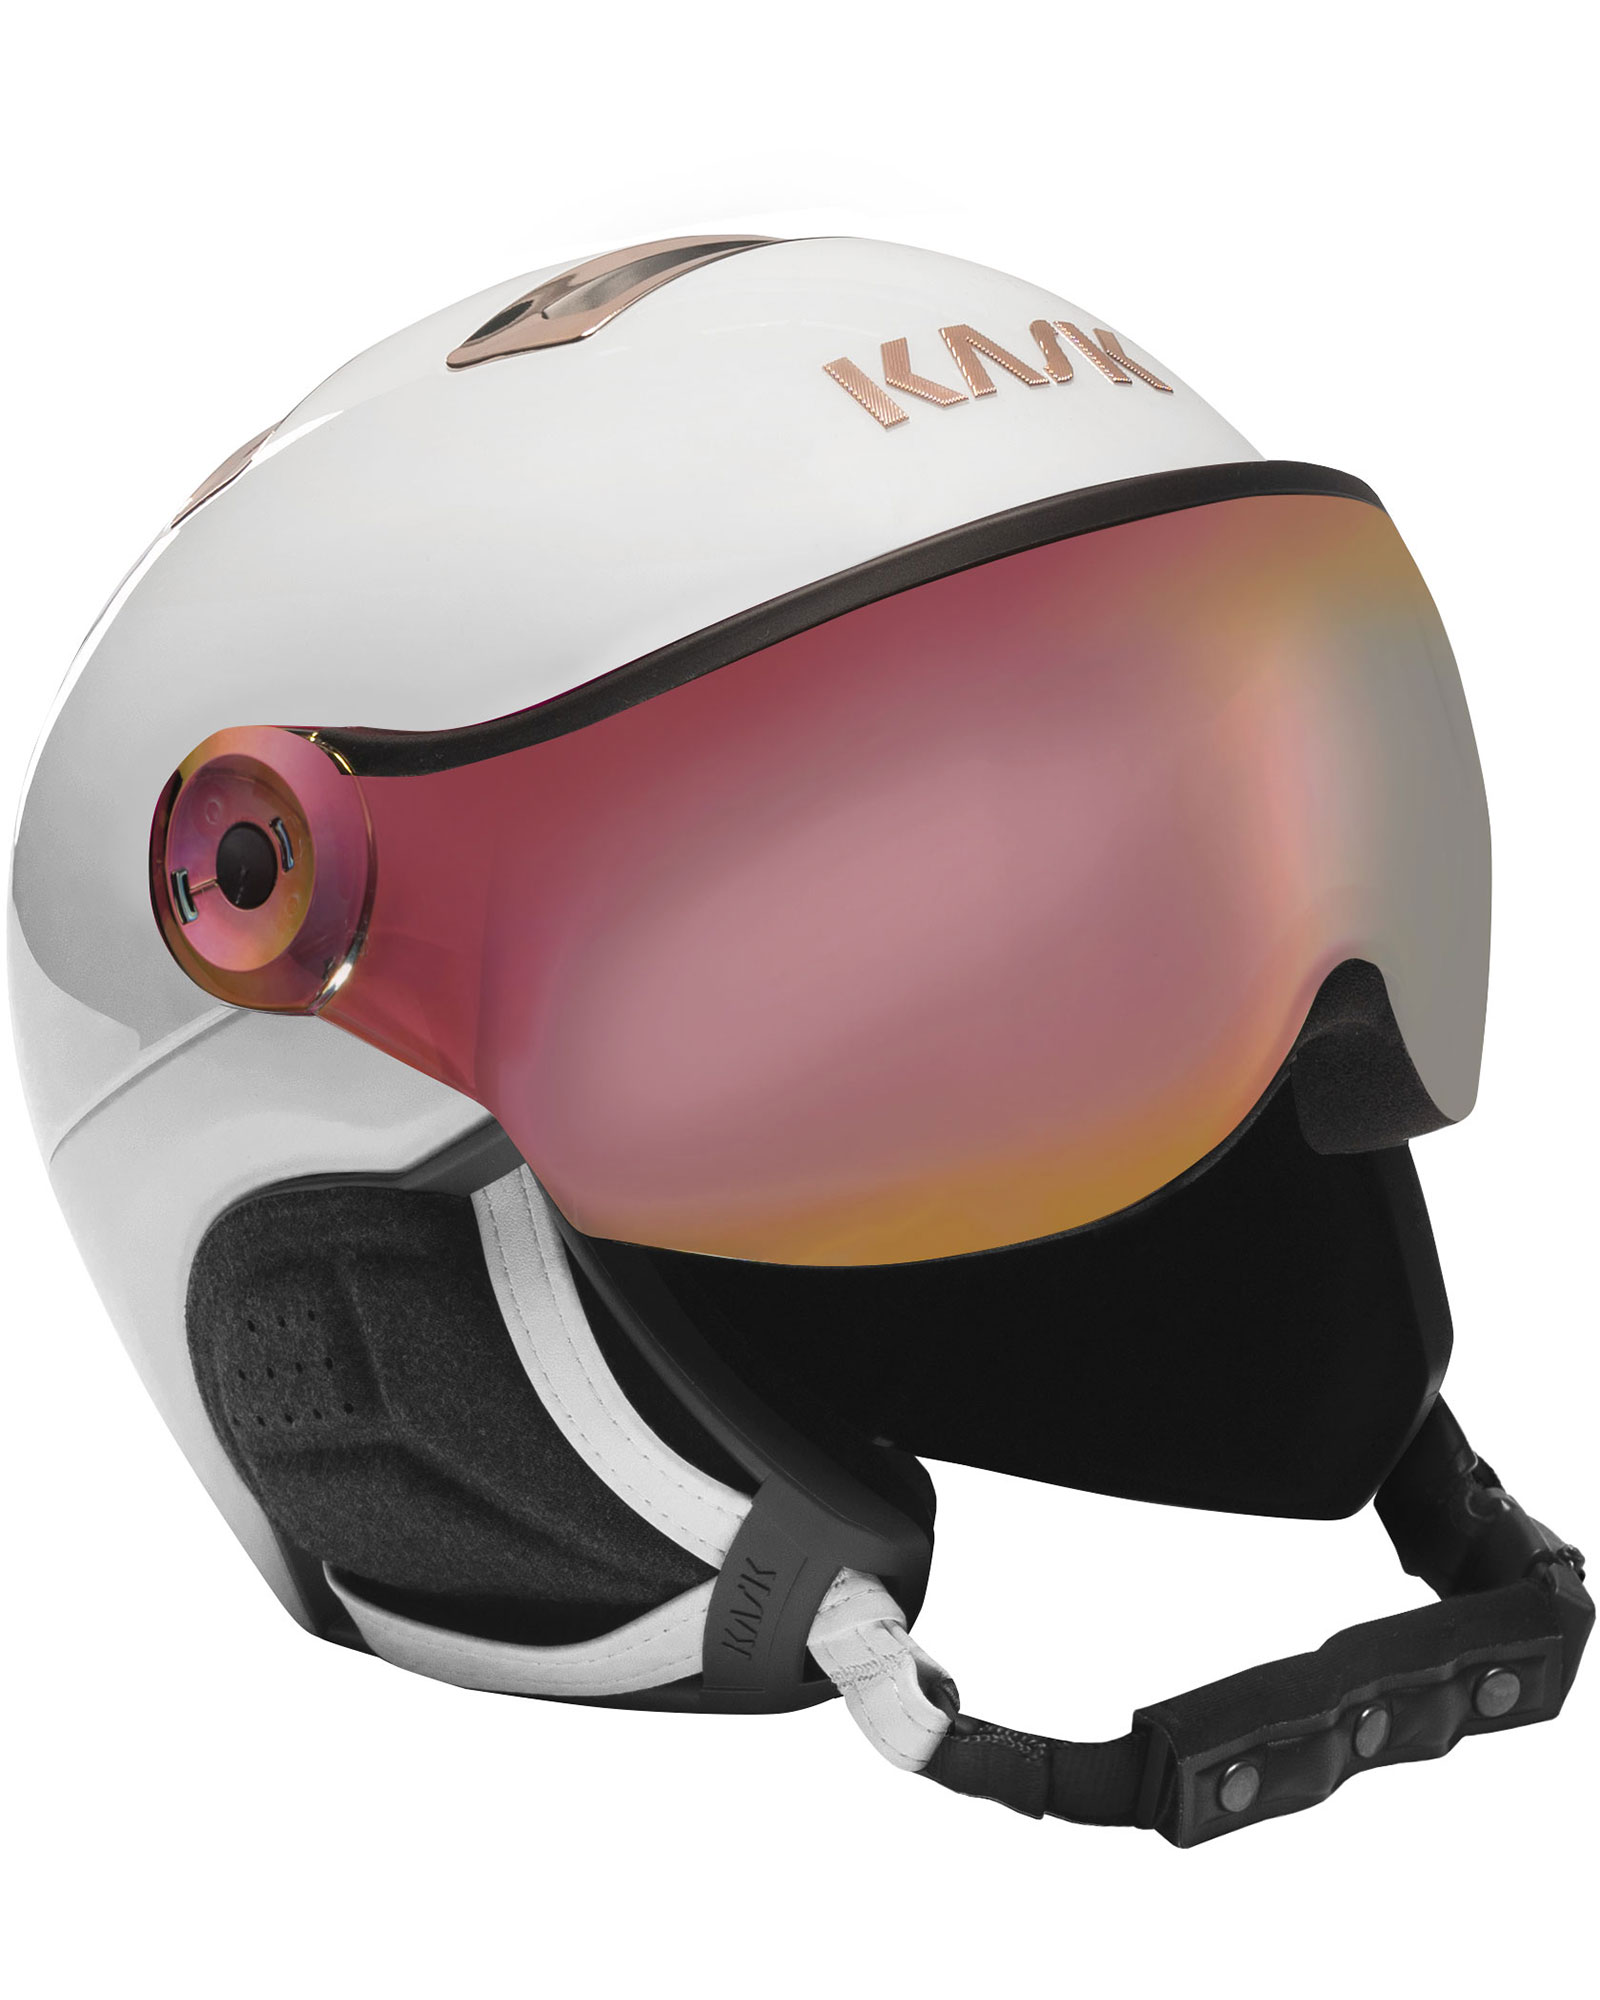 KASK Chrome Visor Helmet - White/Pink Gold - Pink Gold Mirror Visor M